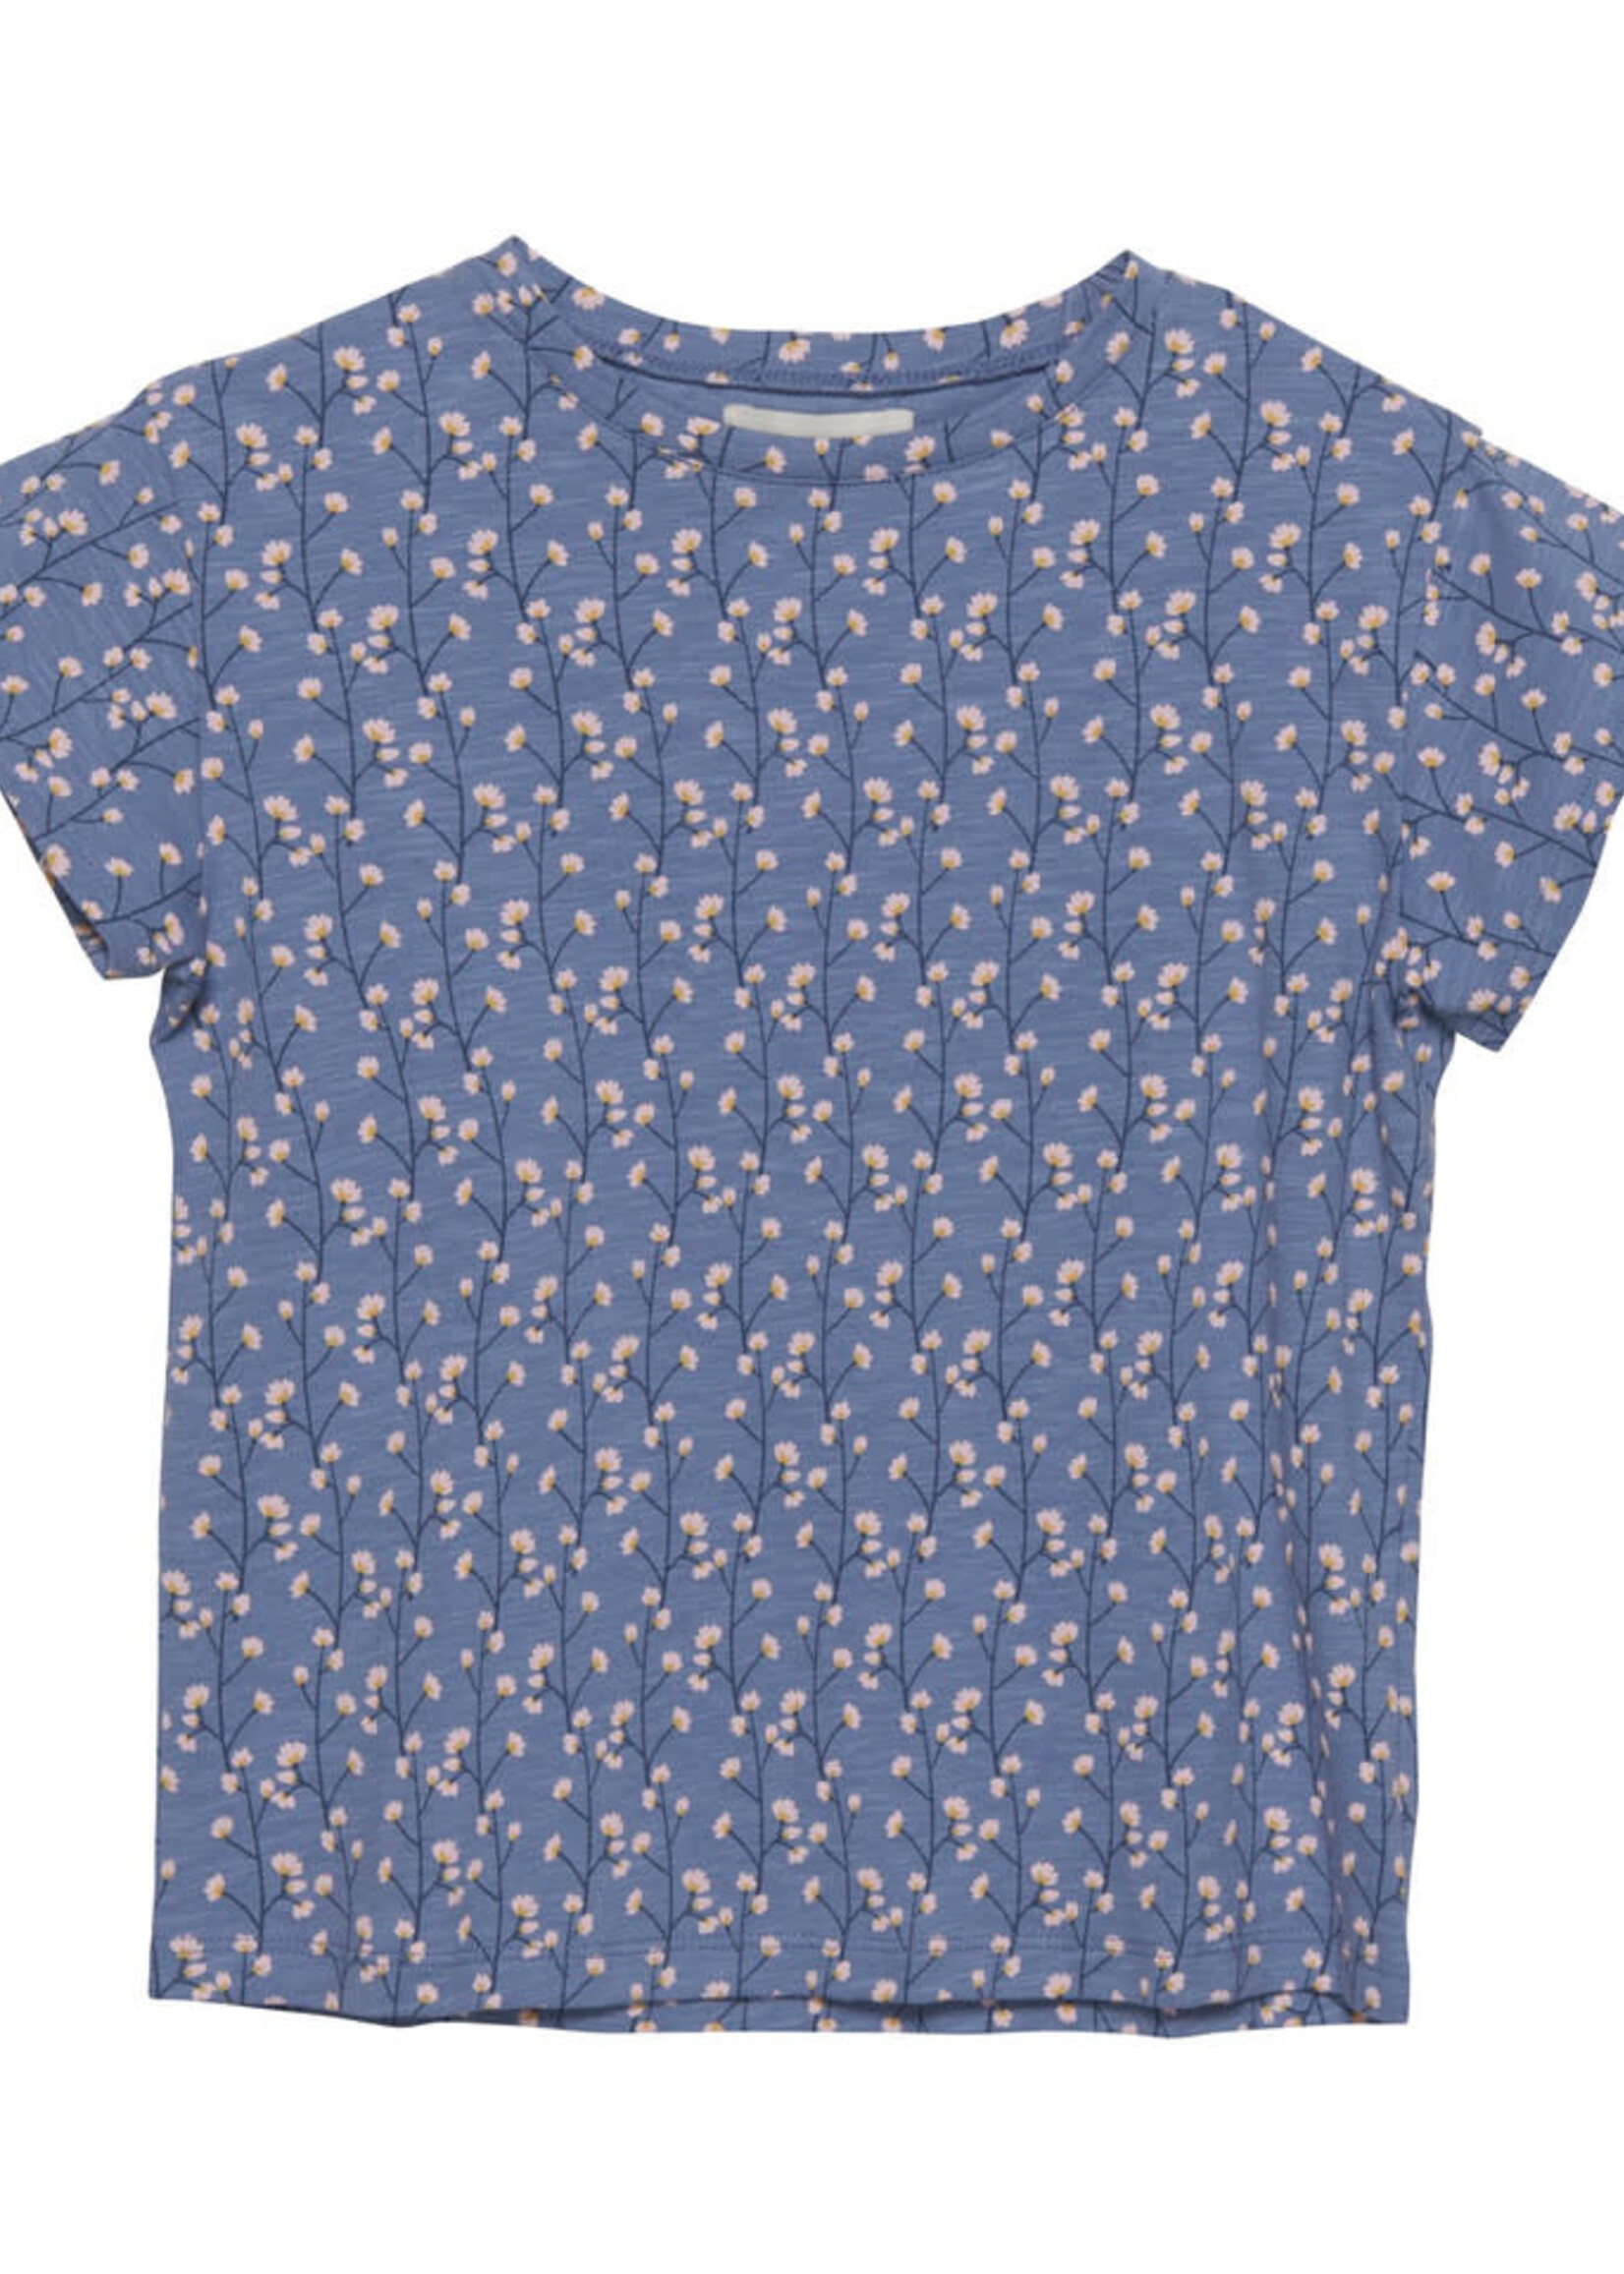 T-shirt jersey bloemen - Country blue